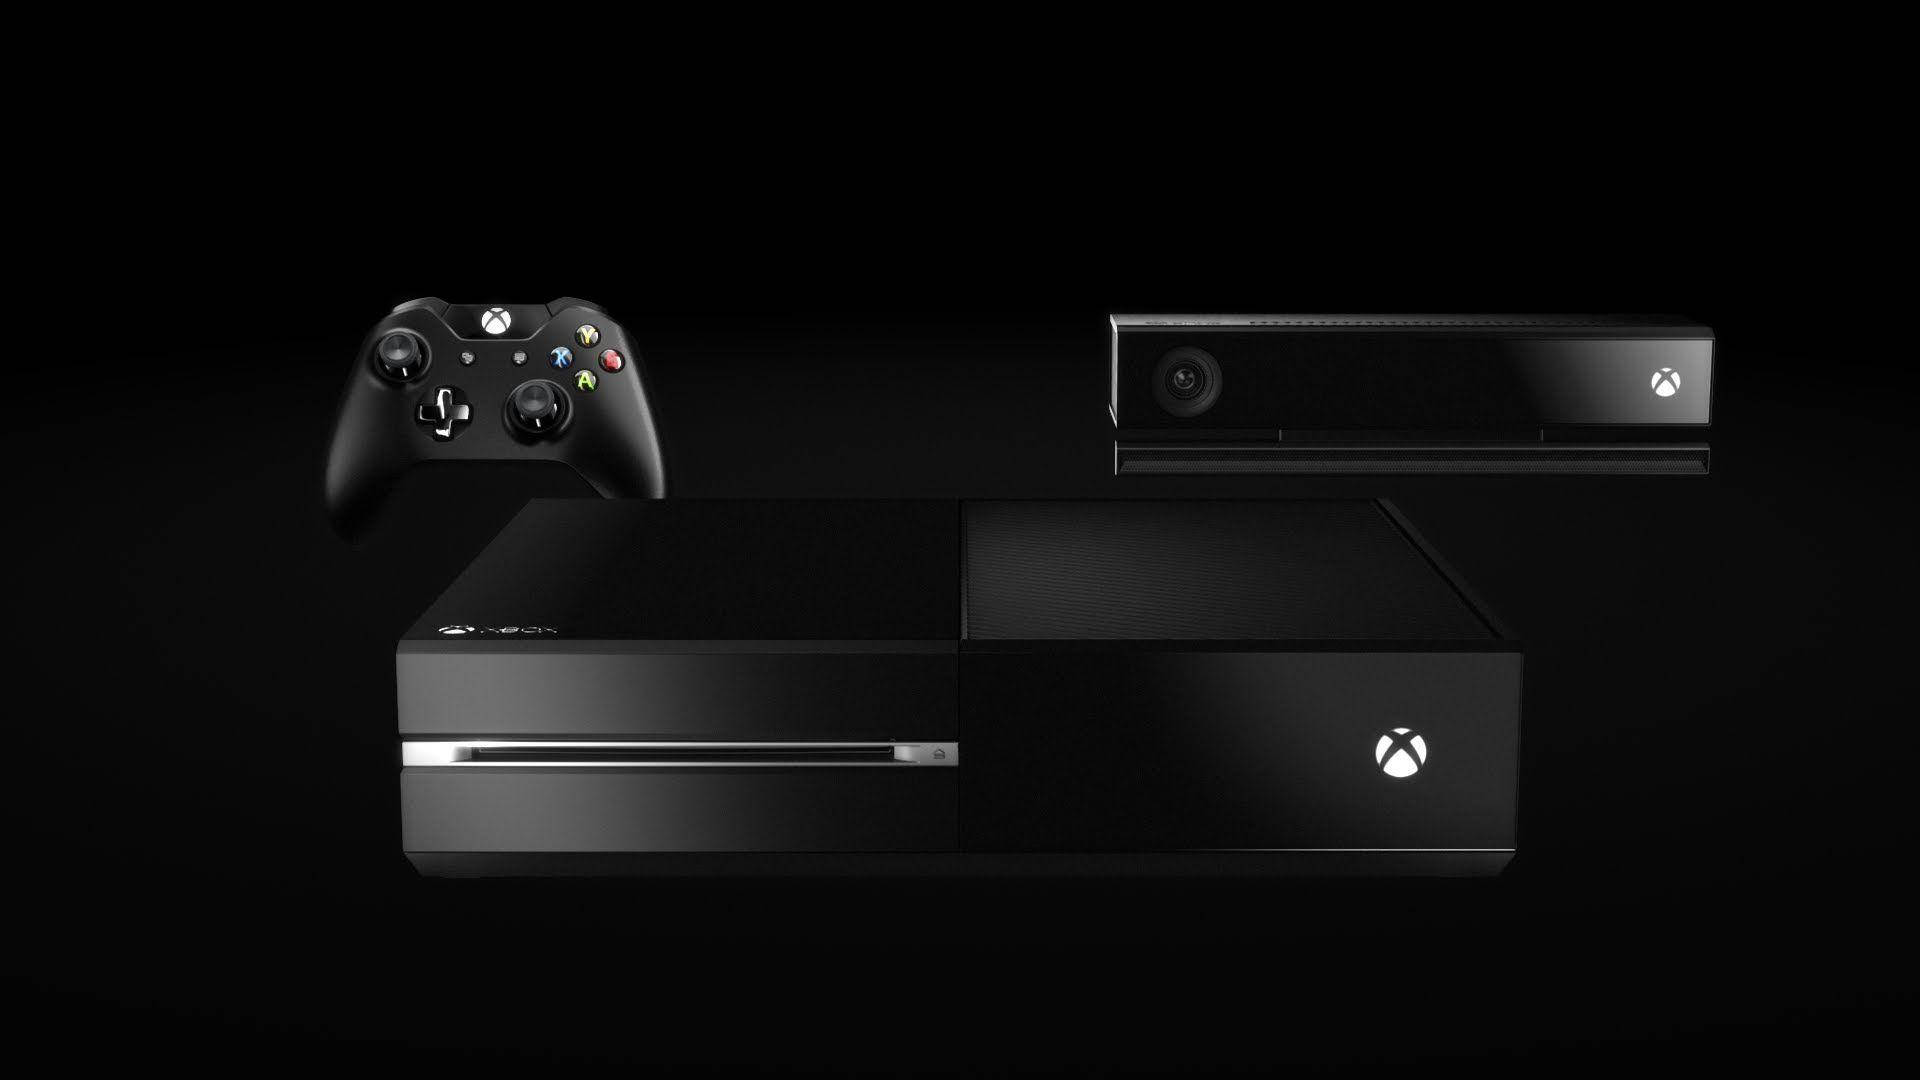 Xboxone Xbox One X - Xbox One X - Xbox One X - Xbox One Kan Vara En Fantastisk Design För Dator- Eller Mobilbakgrund. Wallpaper